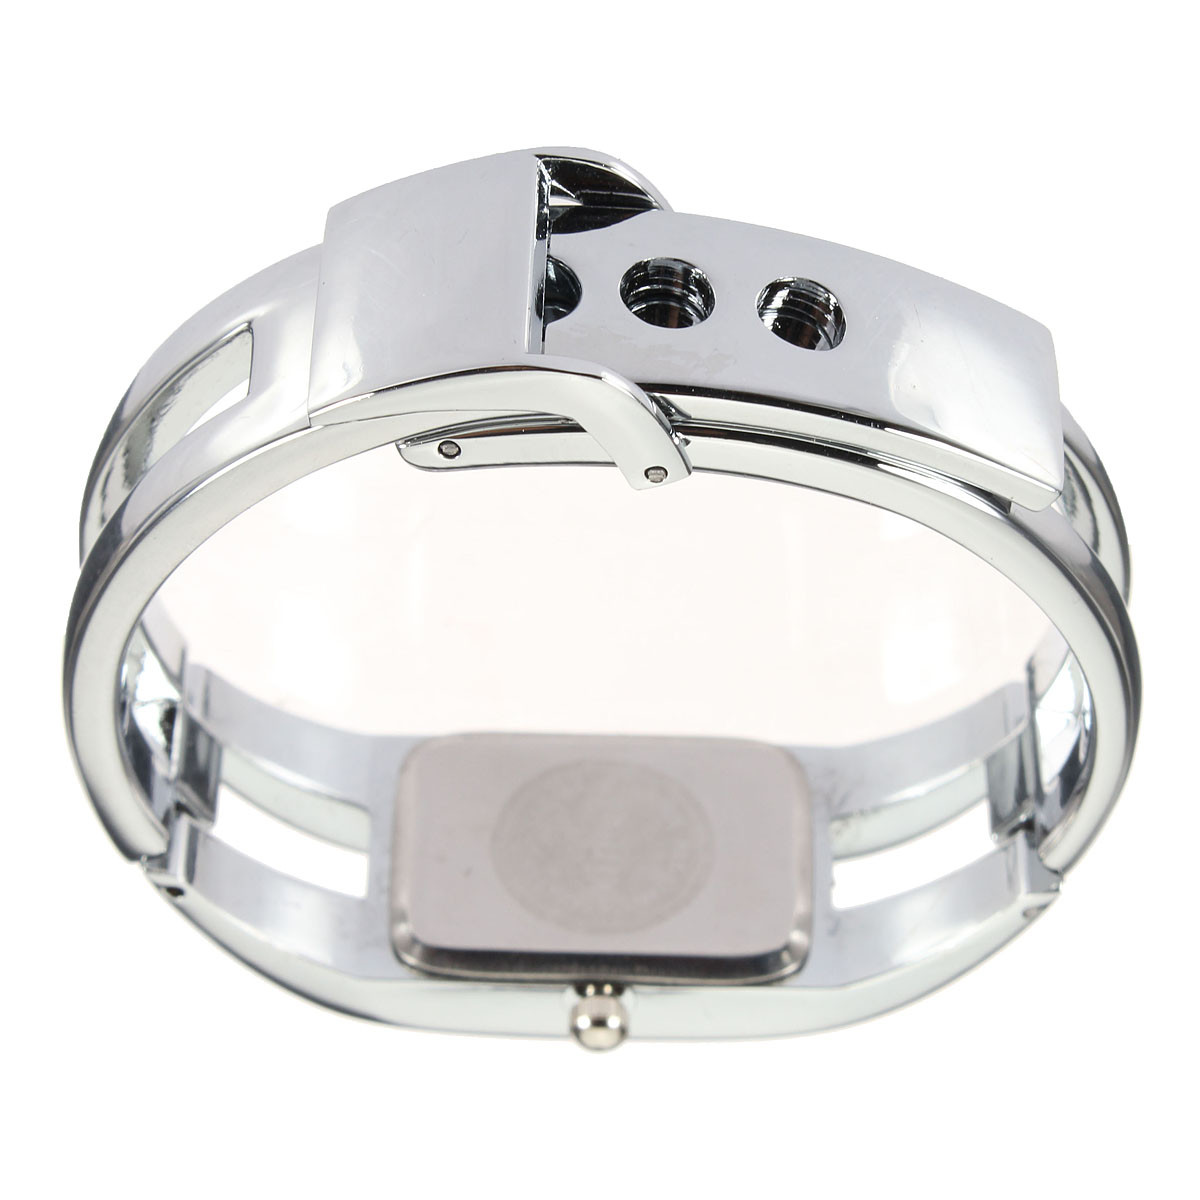 Fashion-Women-Lady-Alloy-Band-Bracelet-Bangle-Rectangle-Dial-Quartz-Wrist-Watch-1049317